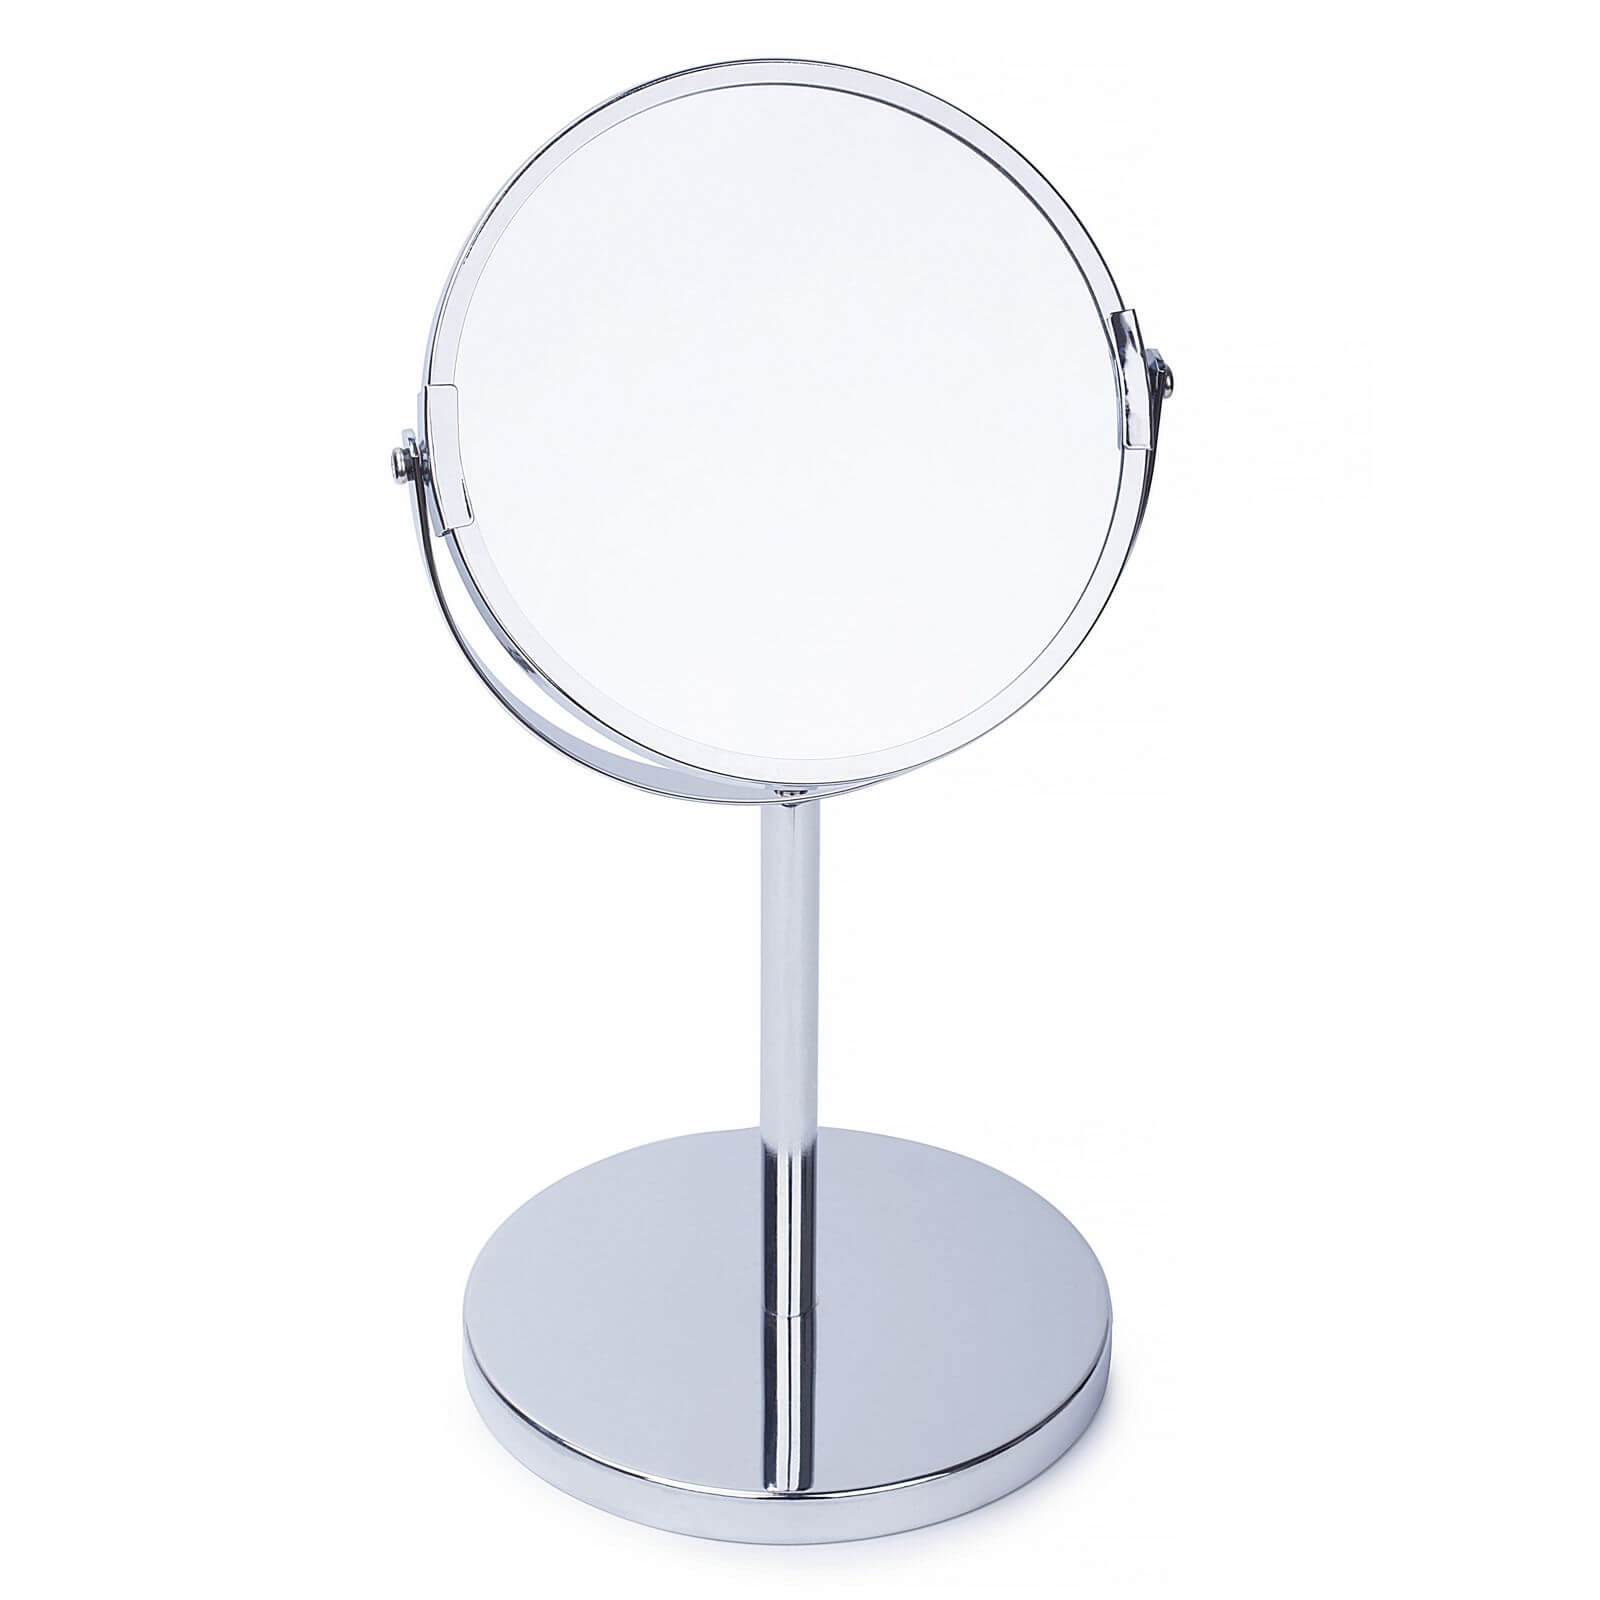 Home Design 15cm Bathroom Mirror - Chrome